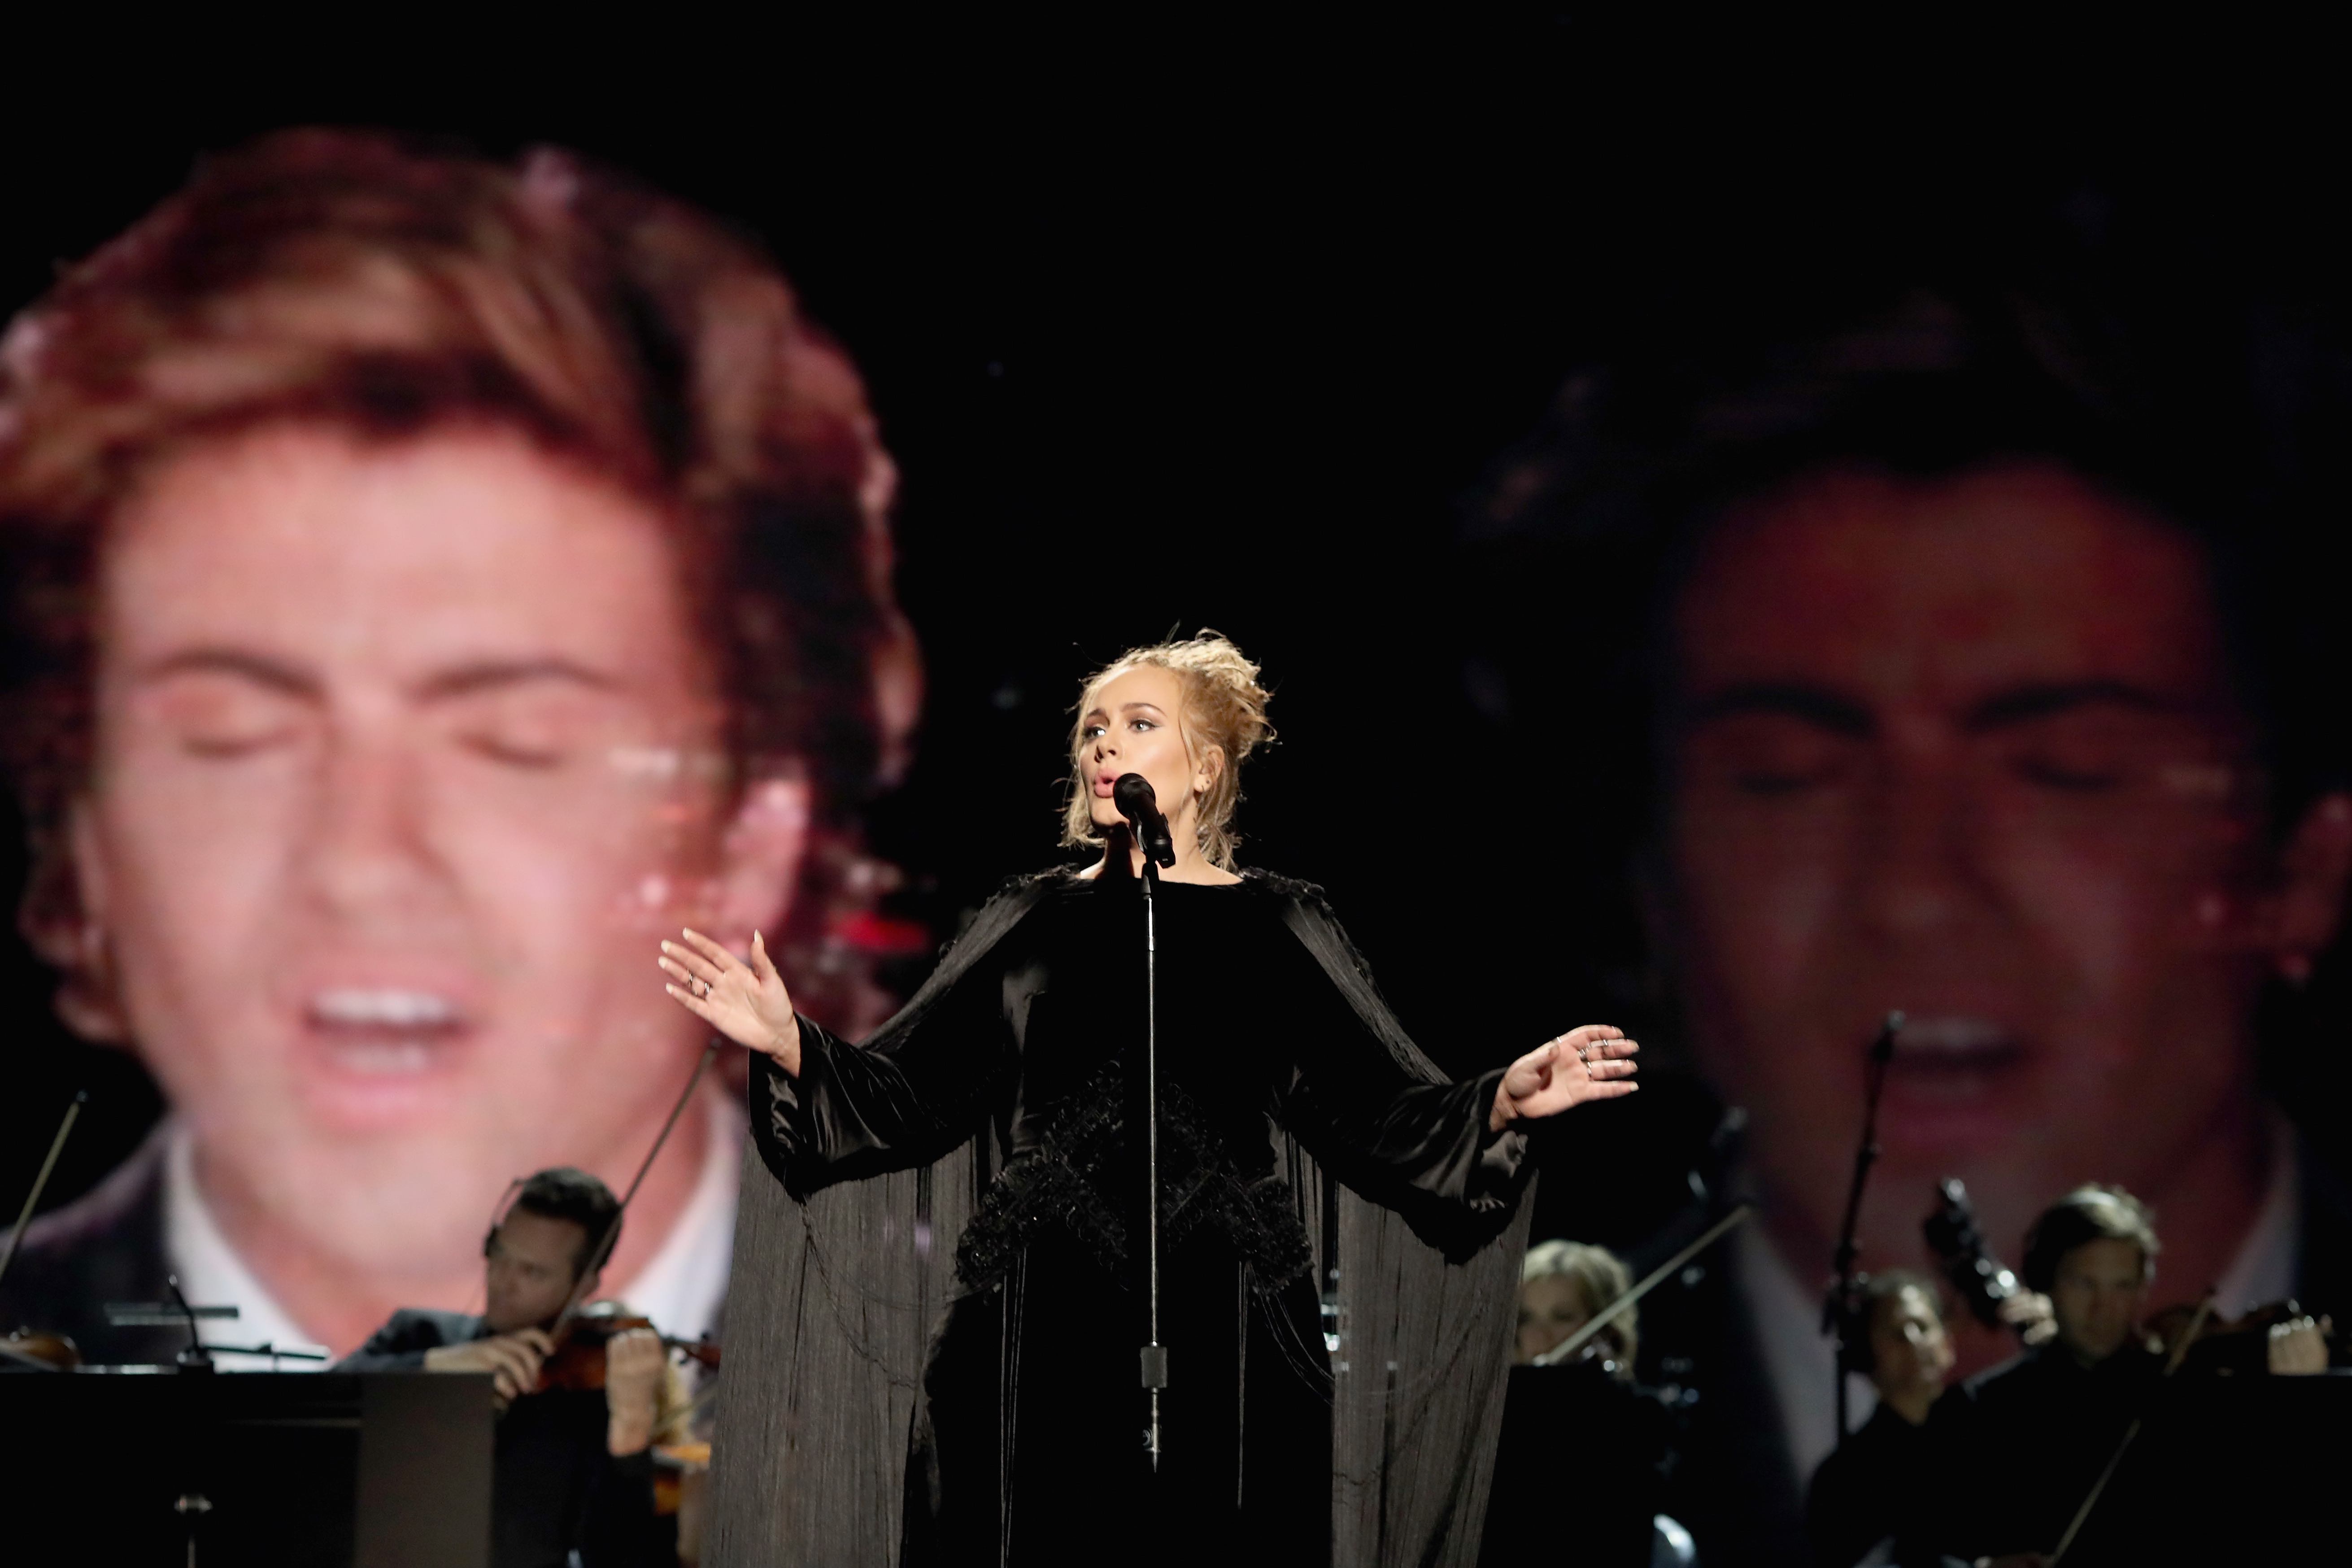 Adele singt in Erinnerung an George Michael bei den Grammys 2017